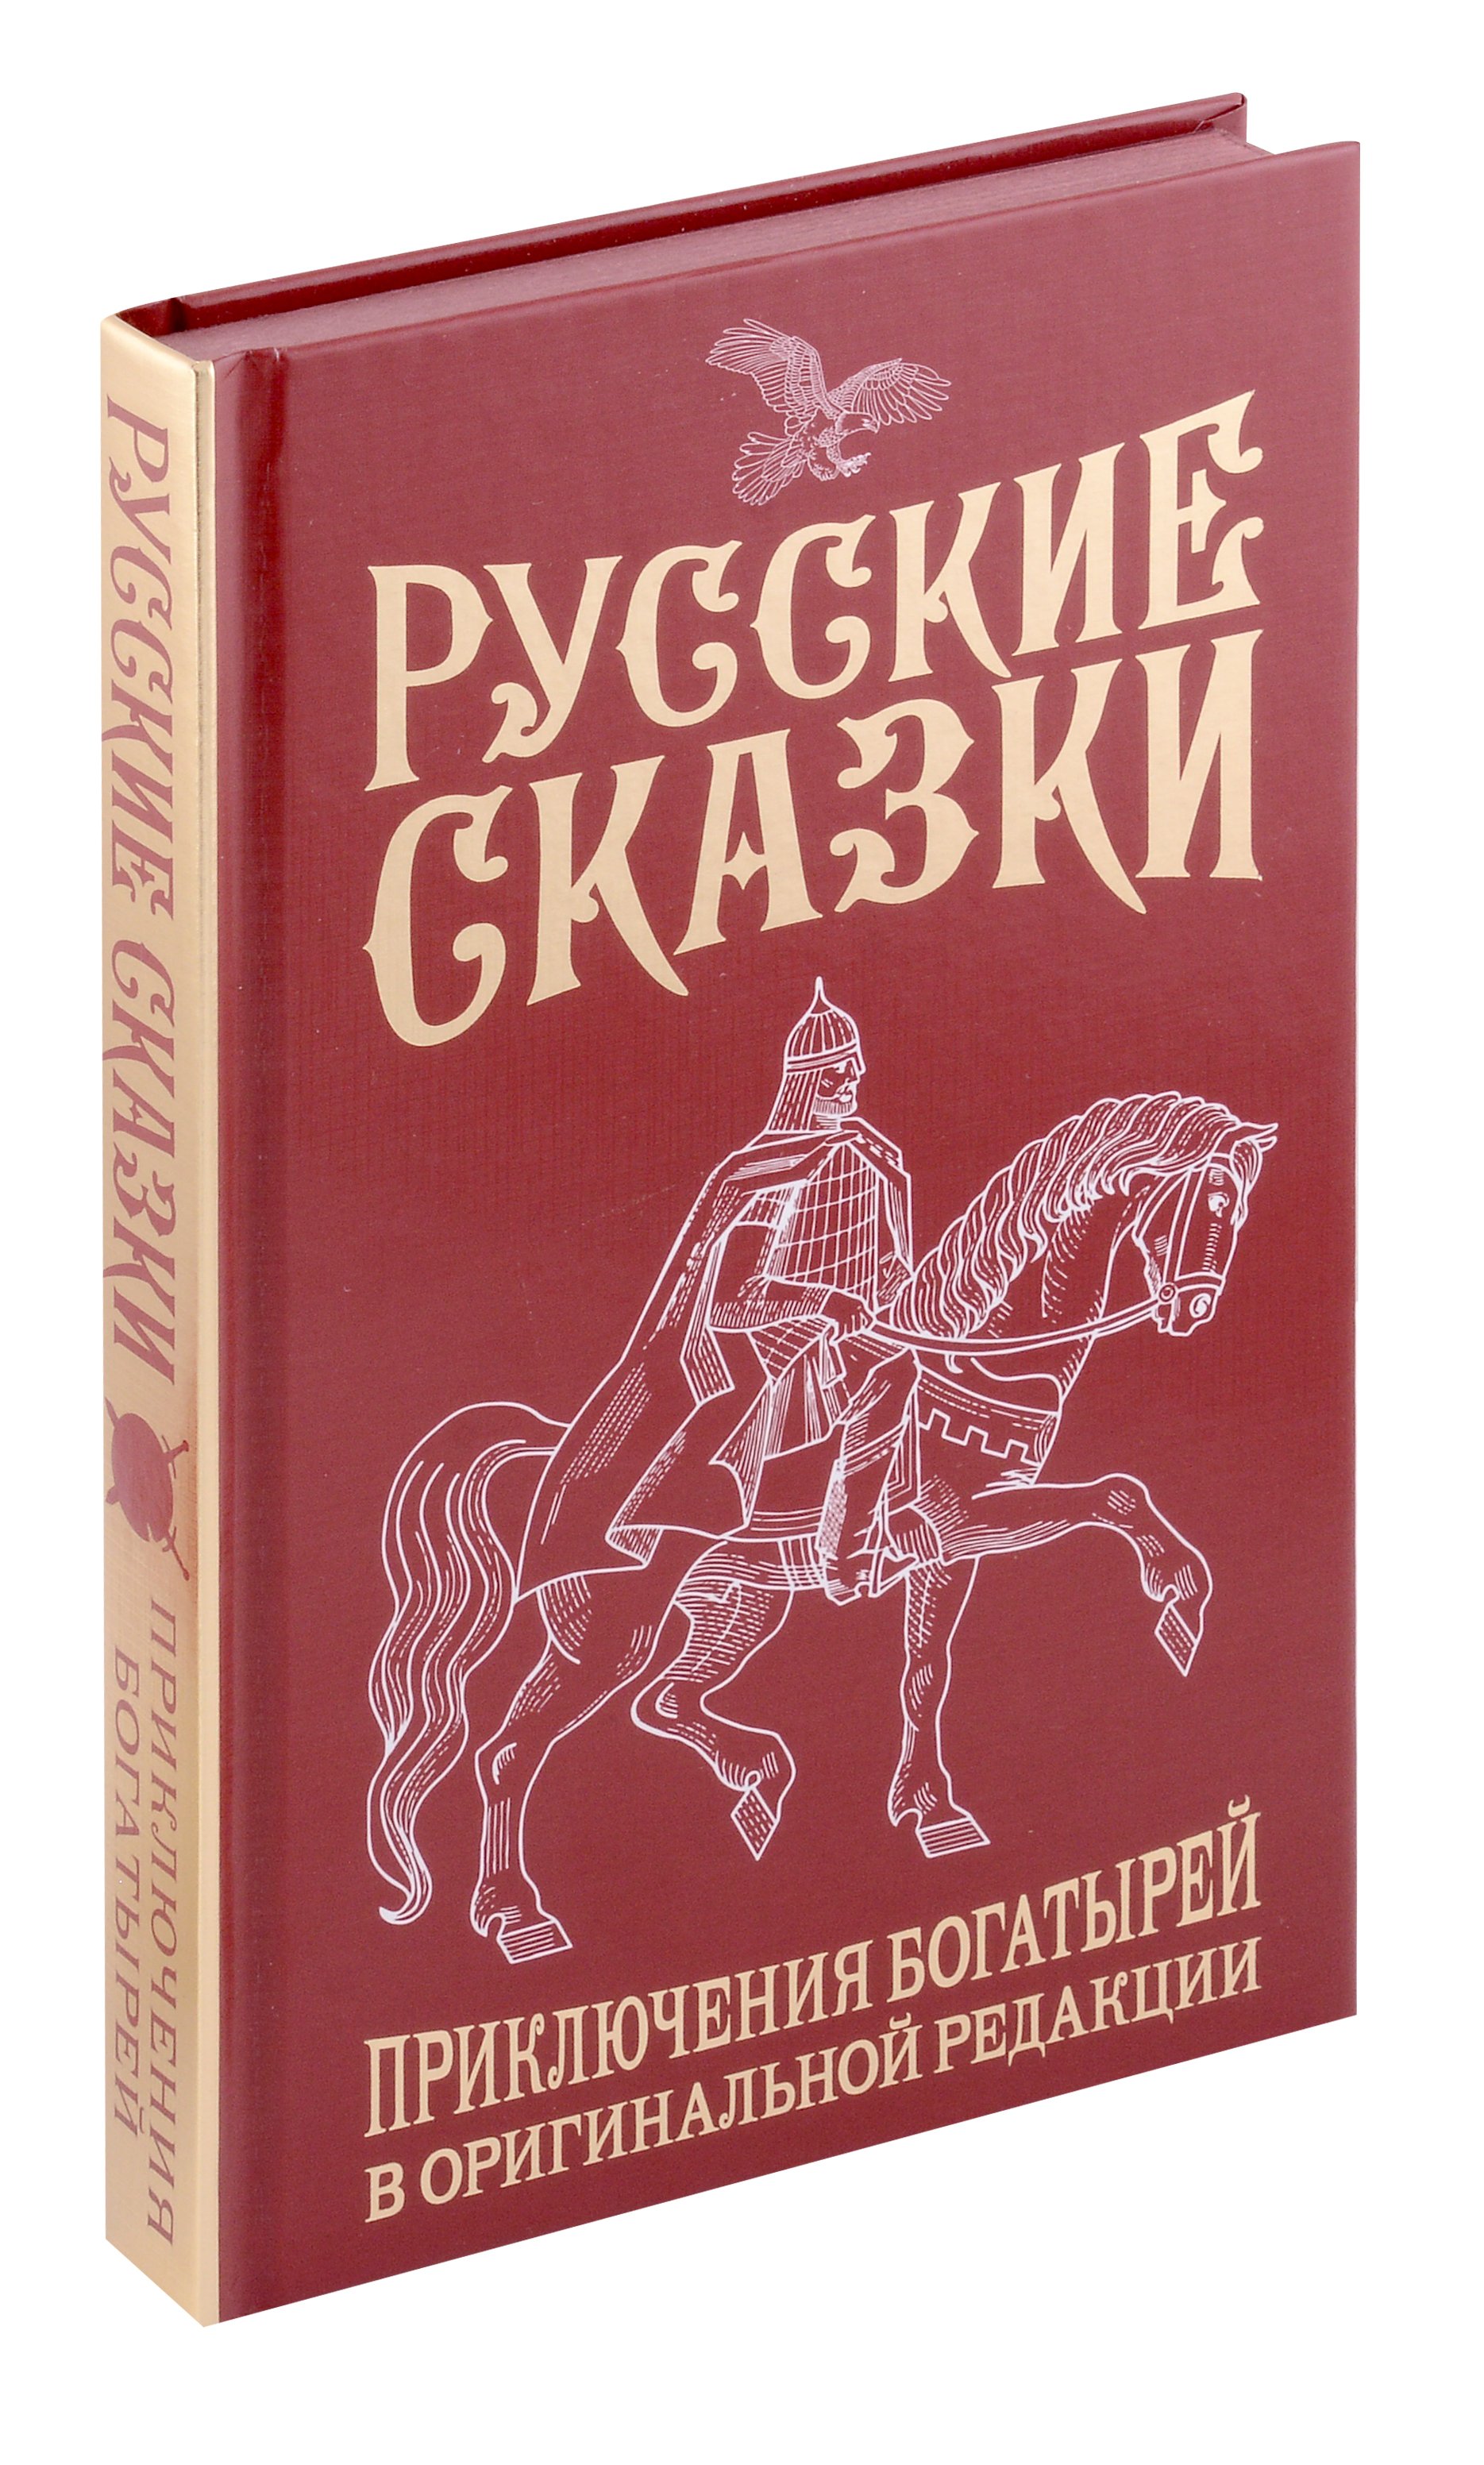 Русские сказки. Приключения богатырей в оригинальной редакции